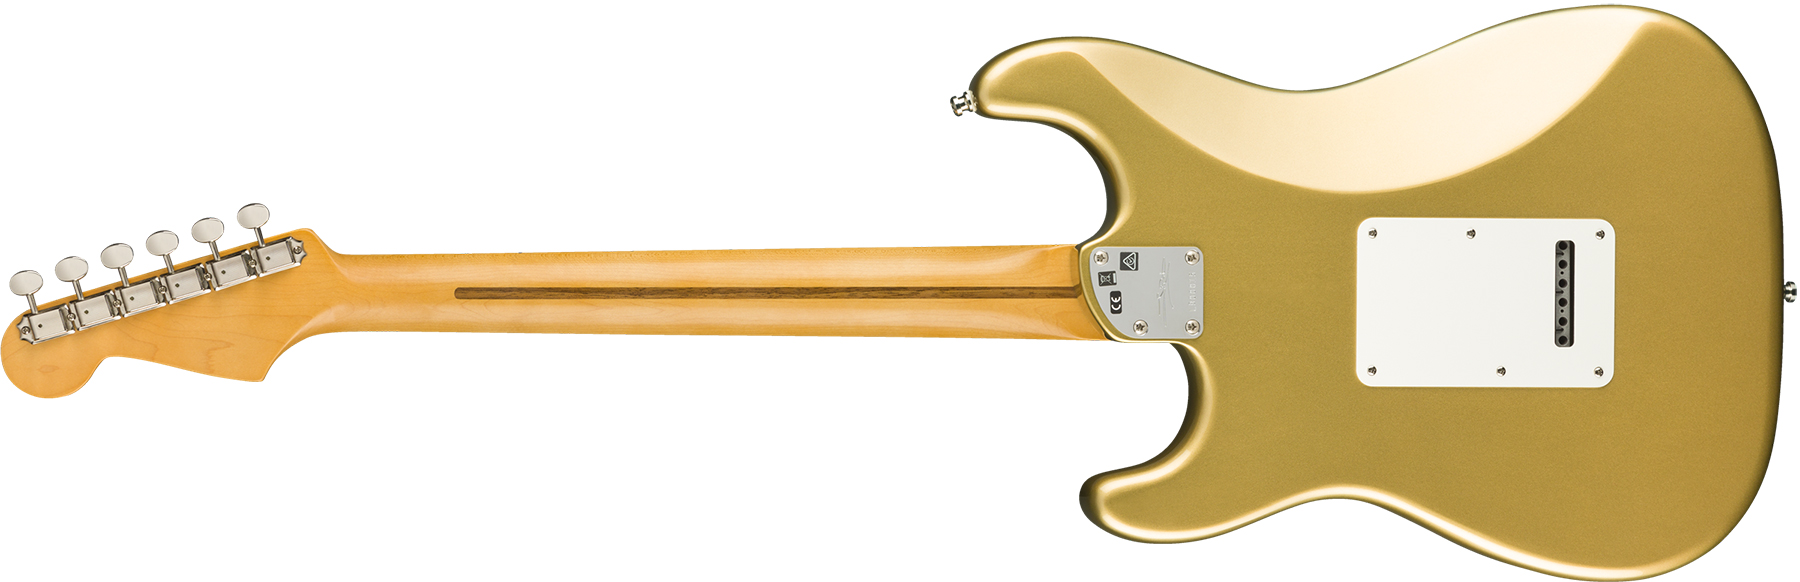 Fender Strat Lincoln Brewster Usa Signature Mn - Aztec Gold - Elektrische gitaar in Str-vorm - Variation 1